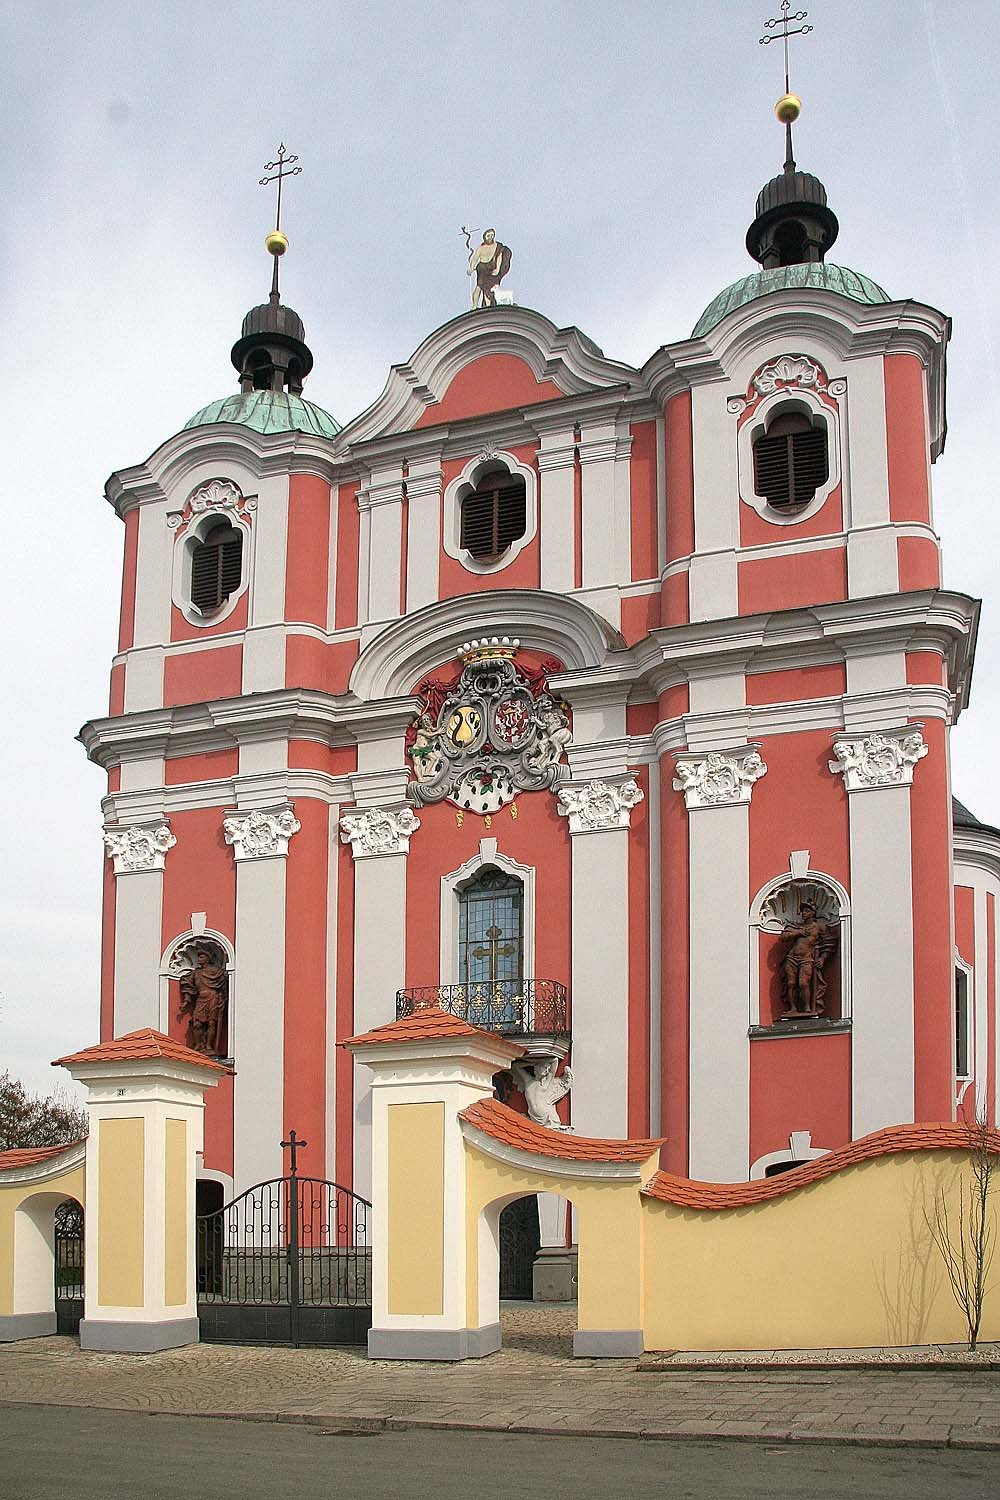 Igreja de São João Batista